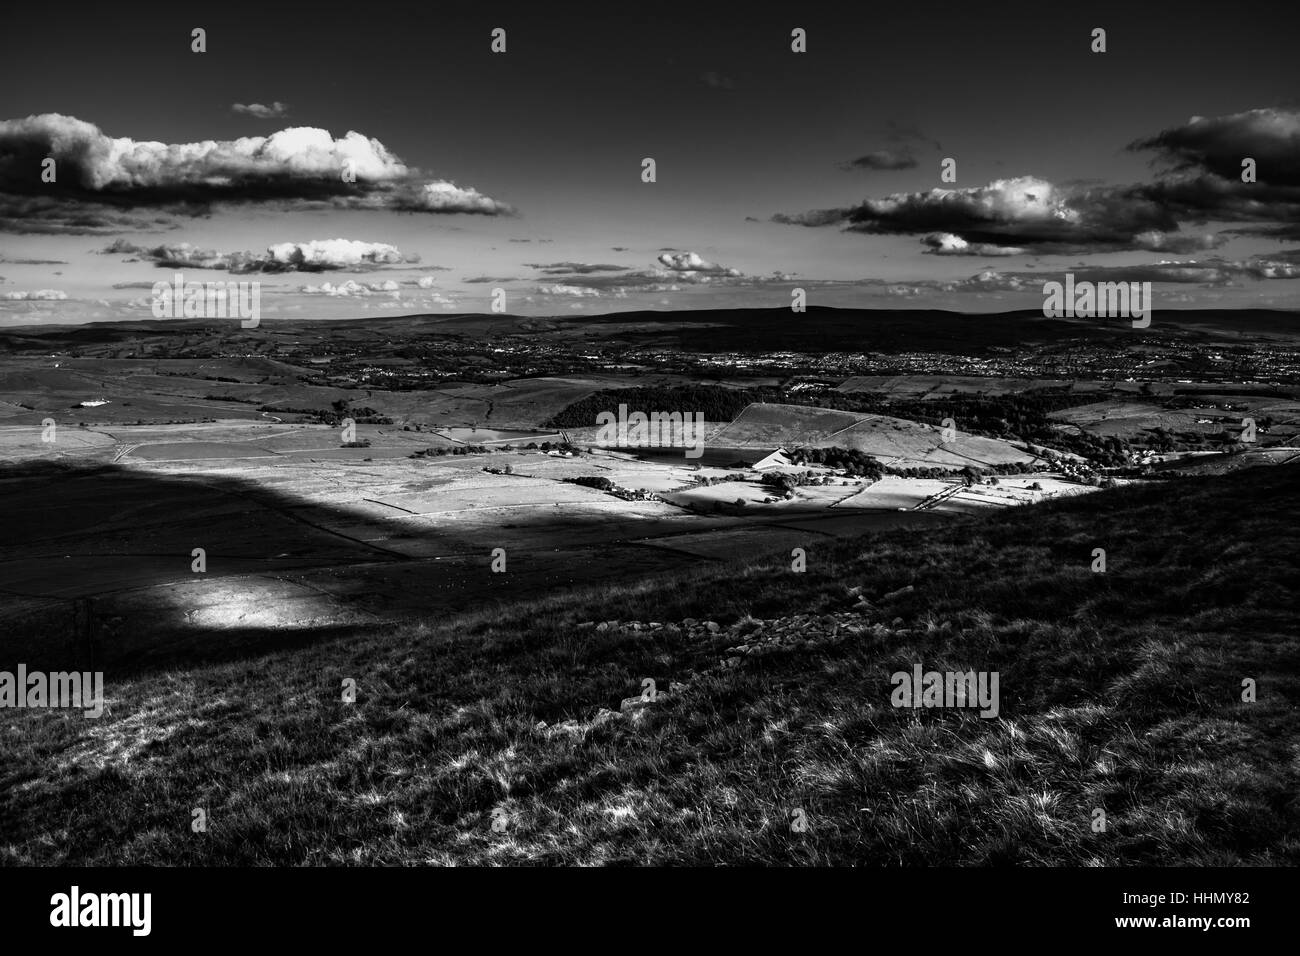 Une vue à l'est de Pendle Hill. Les nuages jettent des ombres sur les collines. Noir et blanc. Forêt de Bowland. Lancashire. Angleterre, Royaume-Uni Banque D'Images